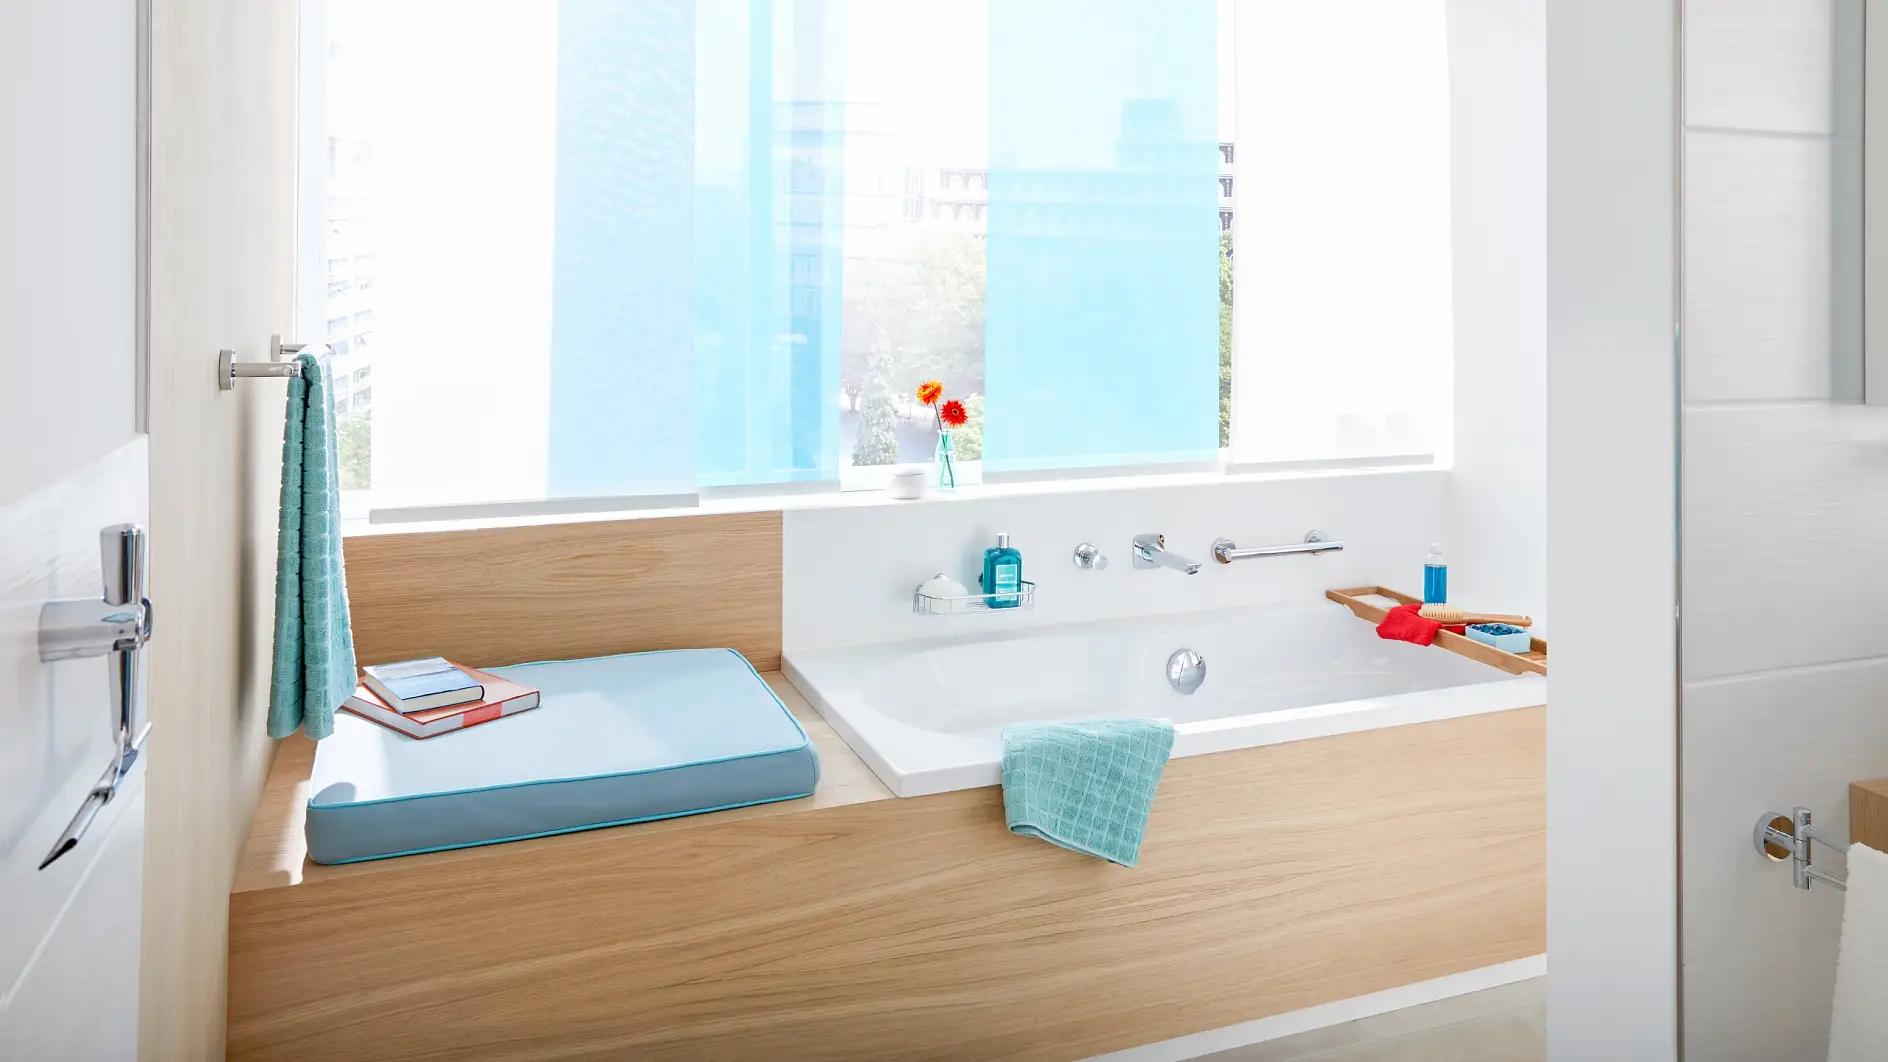 Barres d’appui et solutions de rangement en laiton chromé pour la salle de bains.